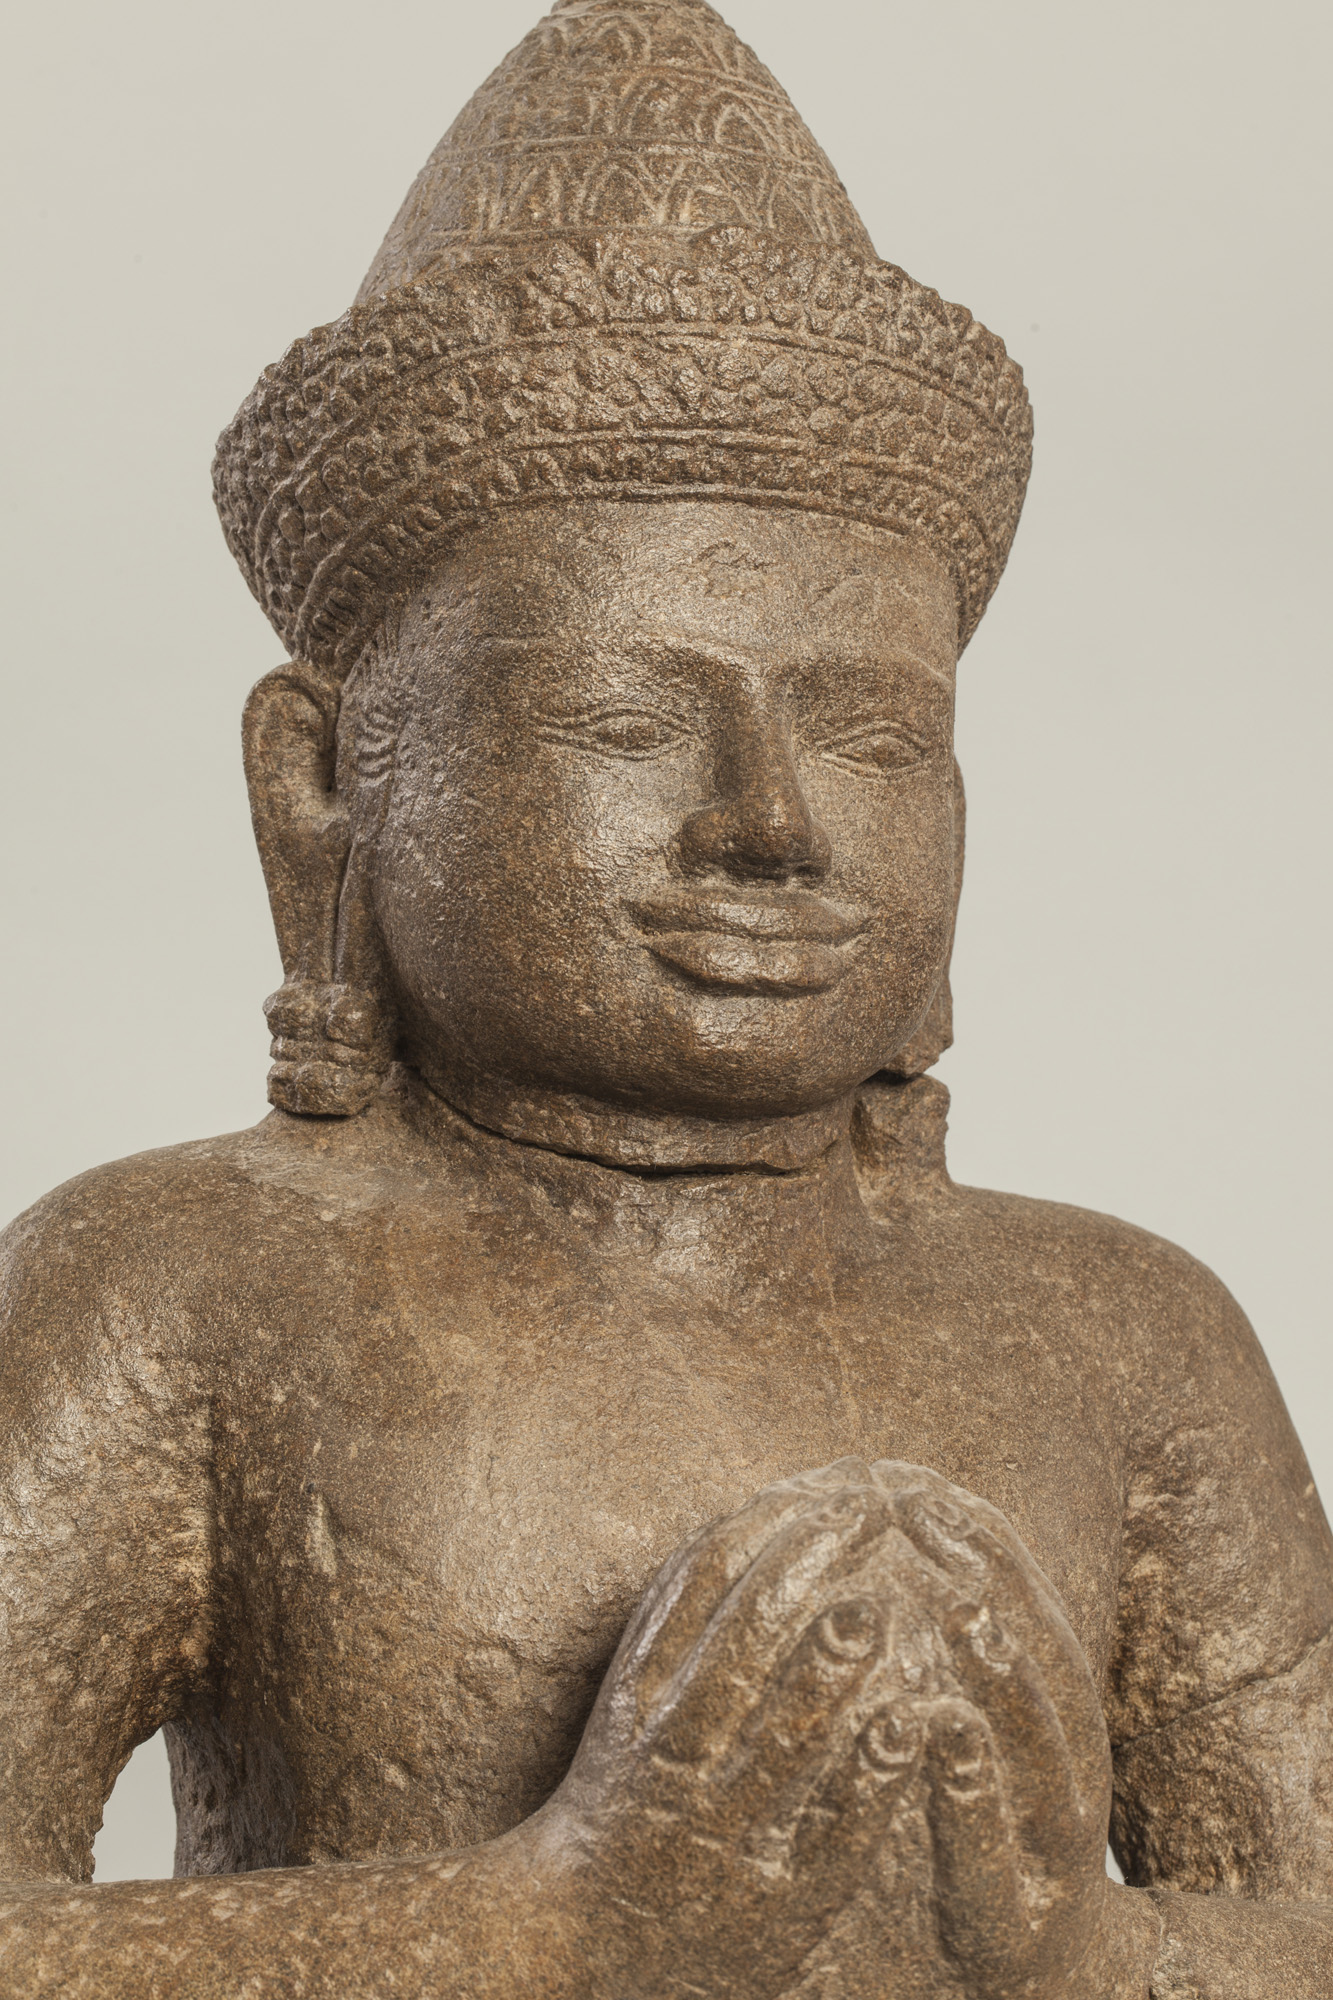 Vishnu assis en dianasana, les mains jointes tenant une offrande, coiffé d’un diadème filmant - Image 2 of 2